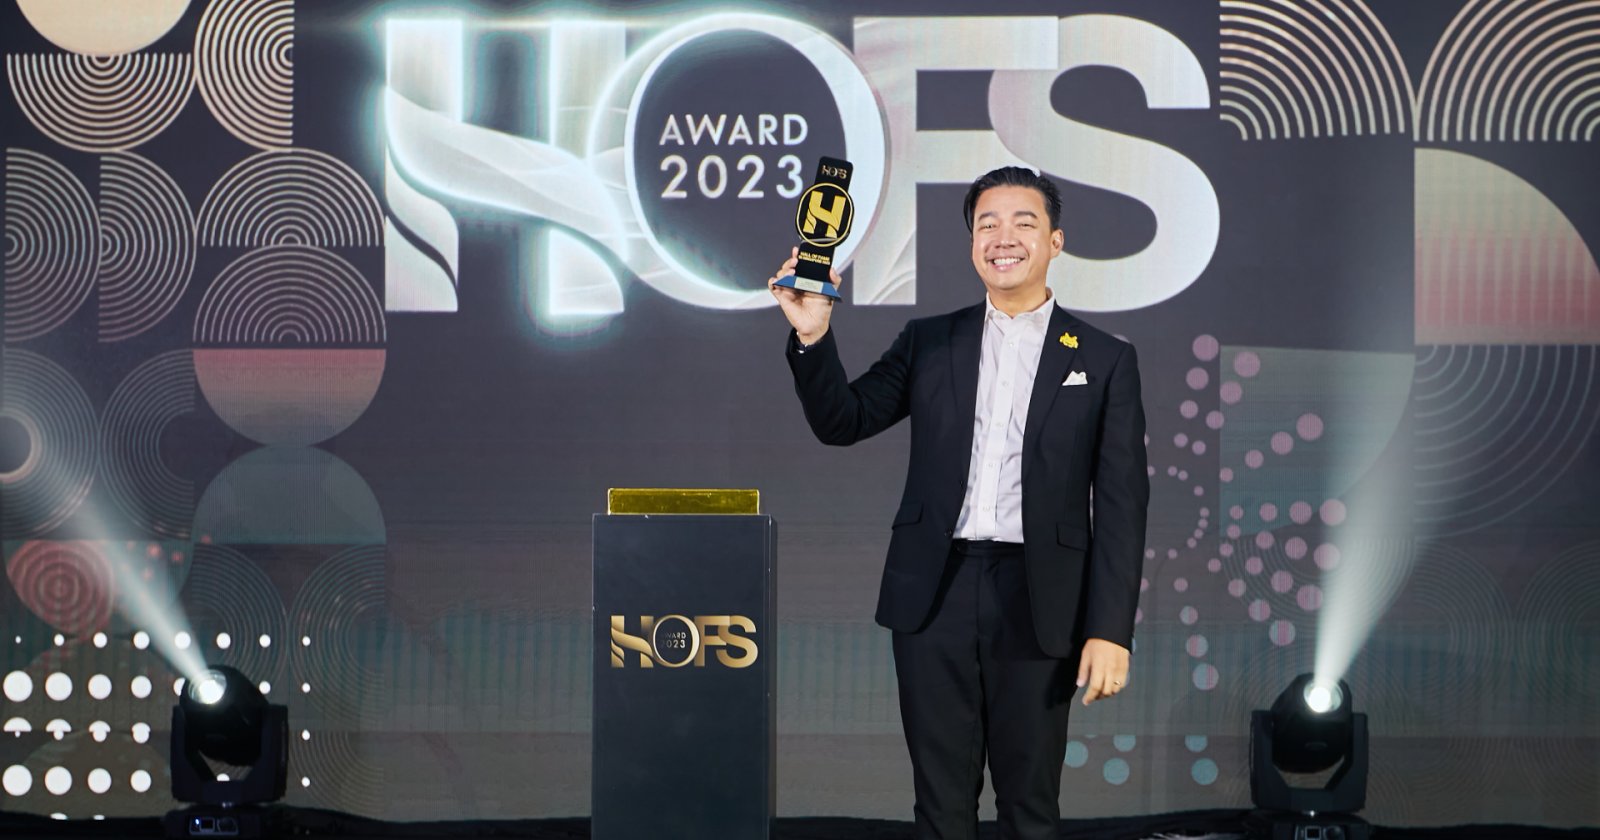 beartai รับรางวัลอินฟลูเอนเซอร์ยอดเยี่ยม HOFS AWARD 2023 จากประเทศสิงคโปร์